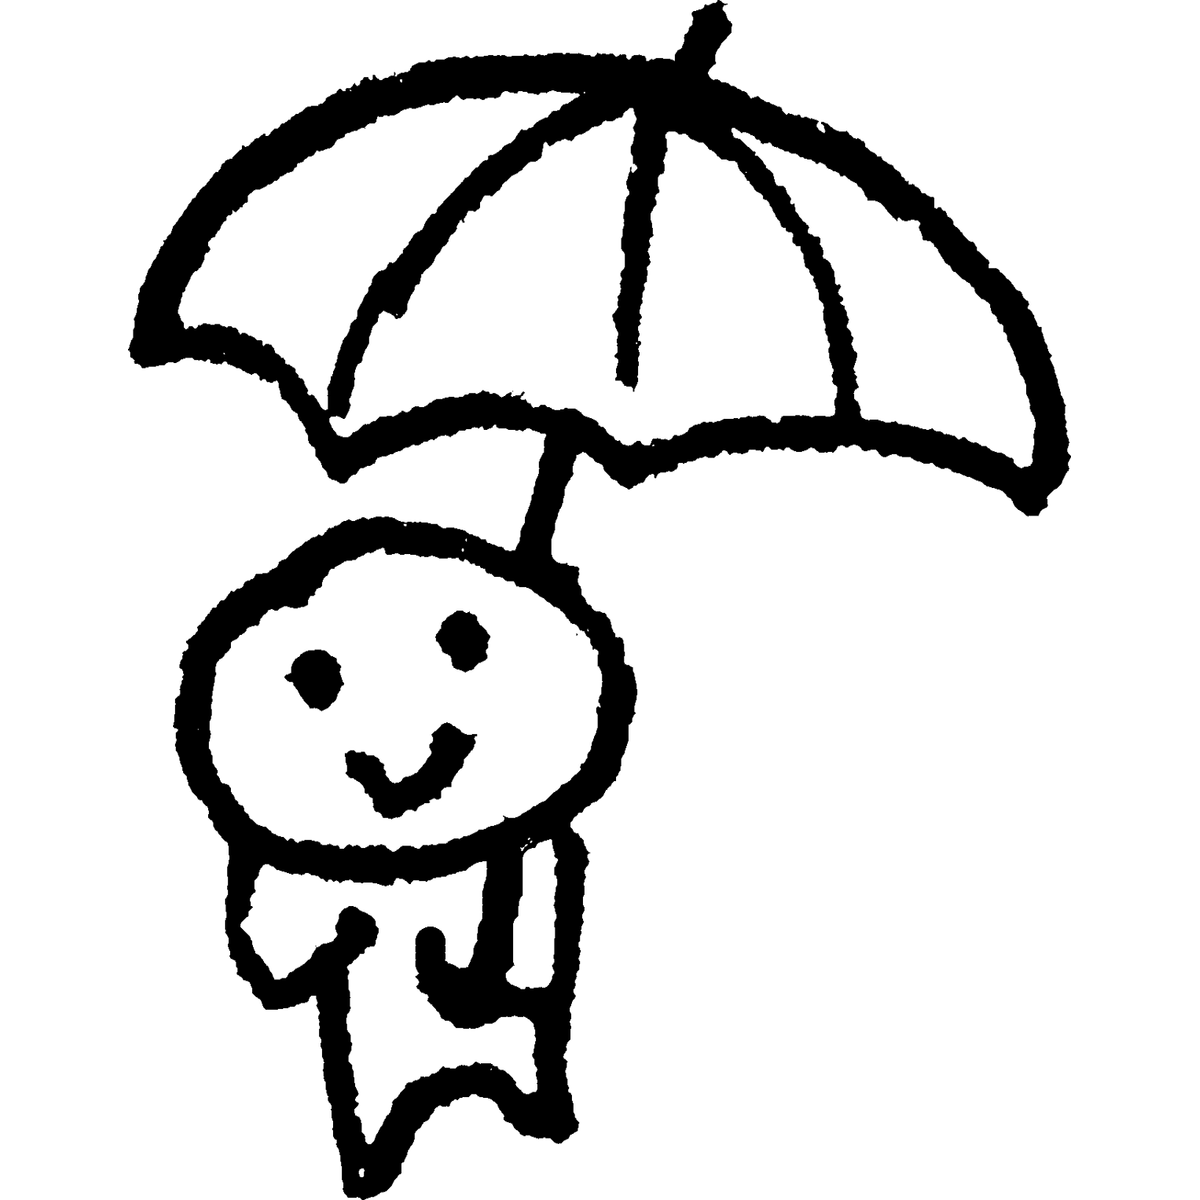 傘をさす2のイラスト / Holding an umbrella 2 Illustration